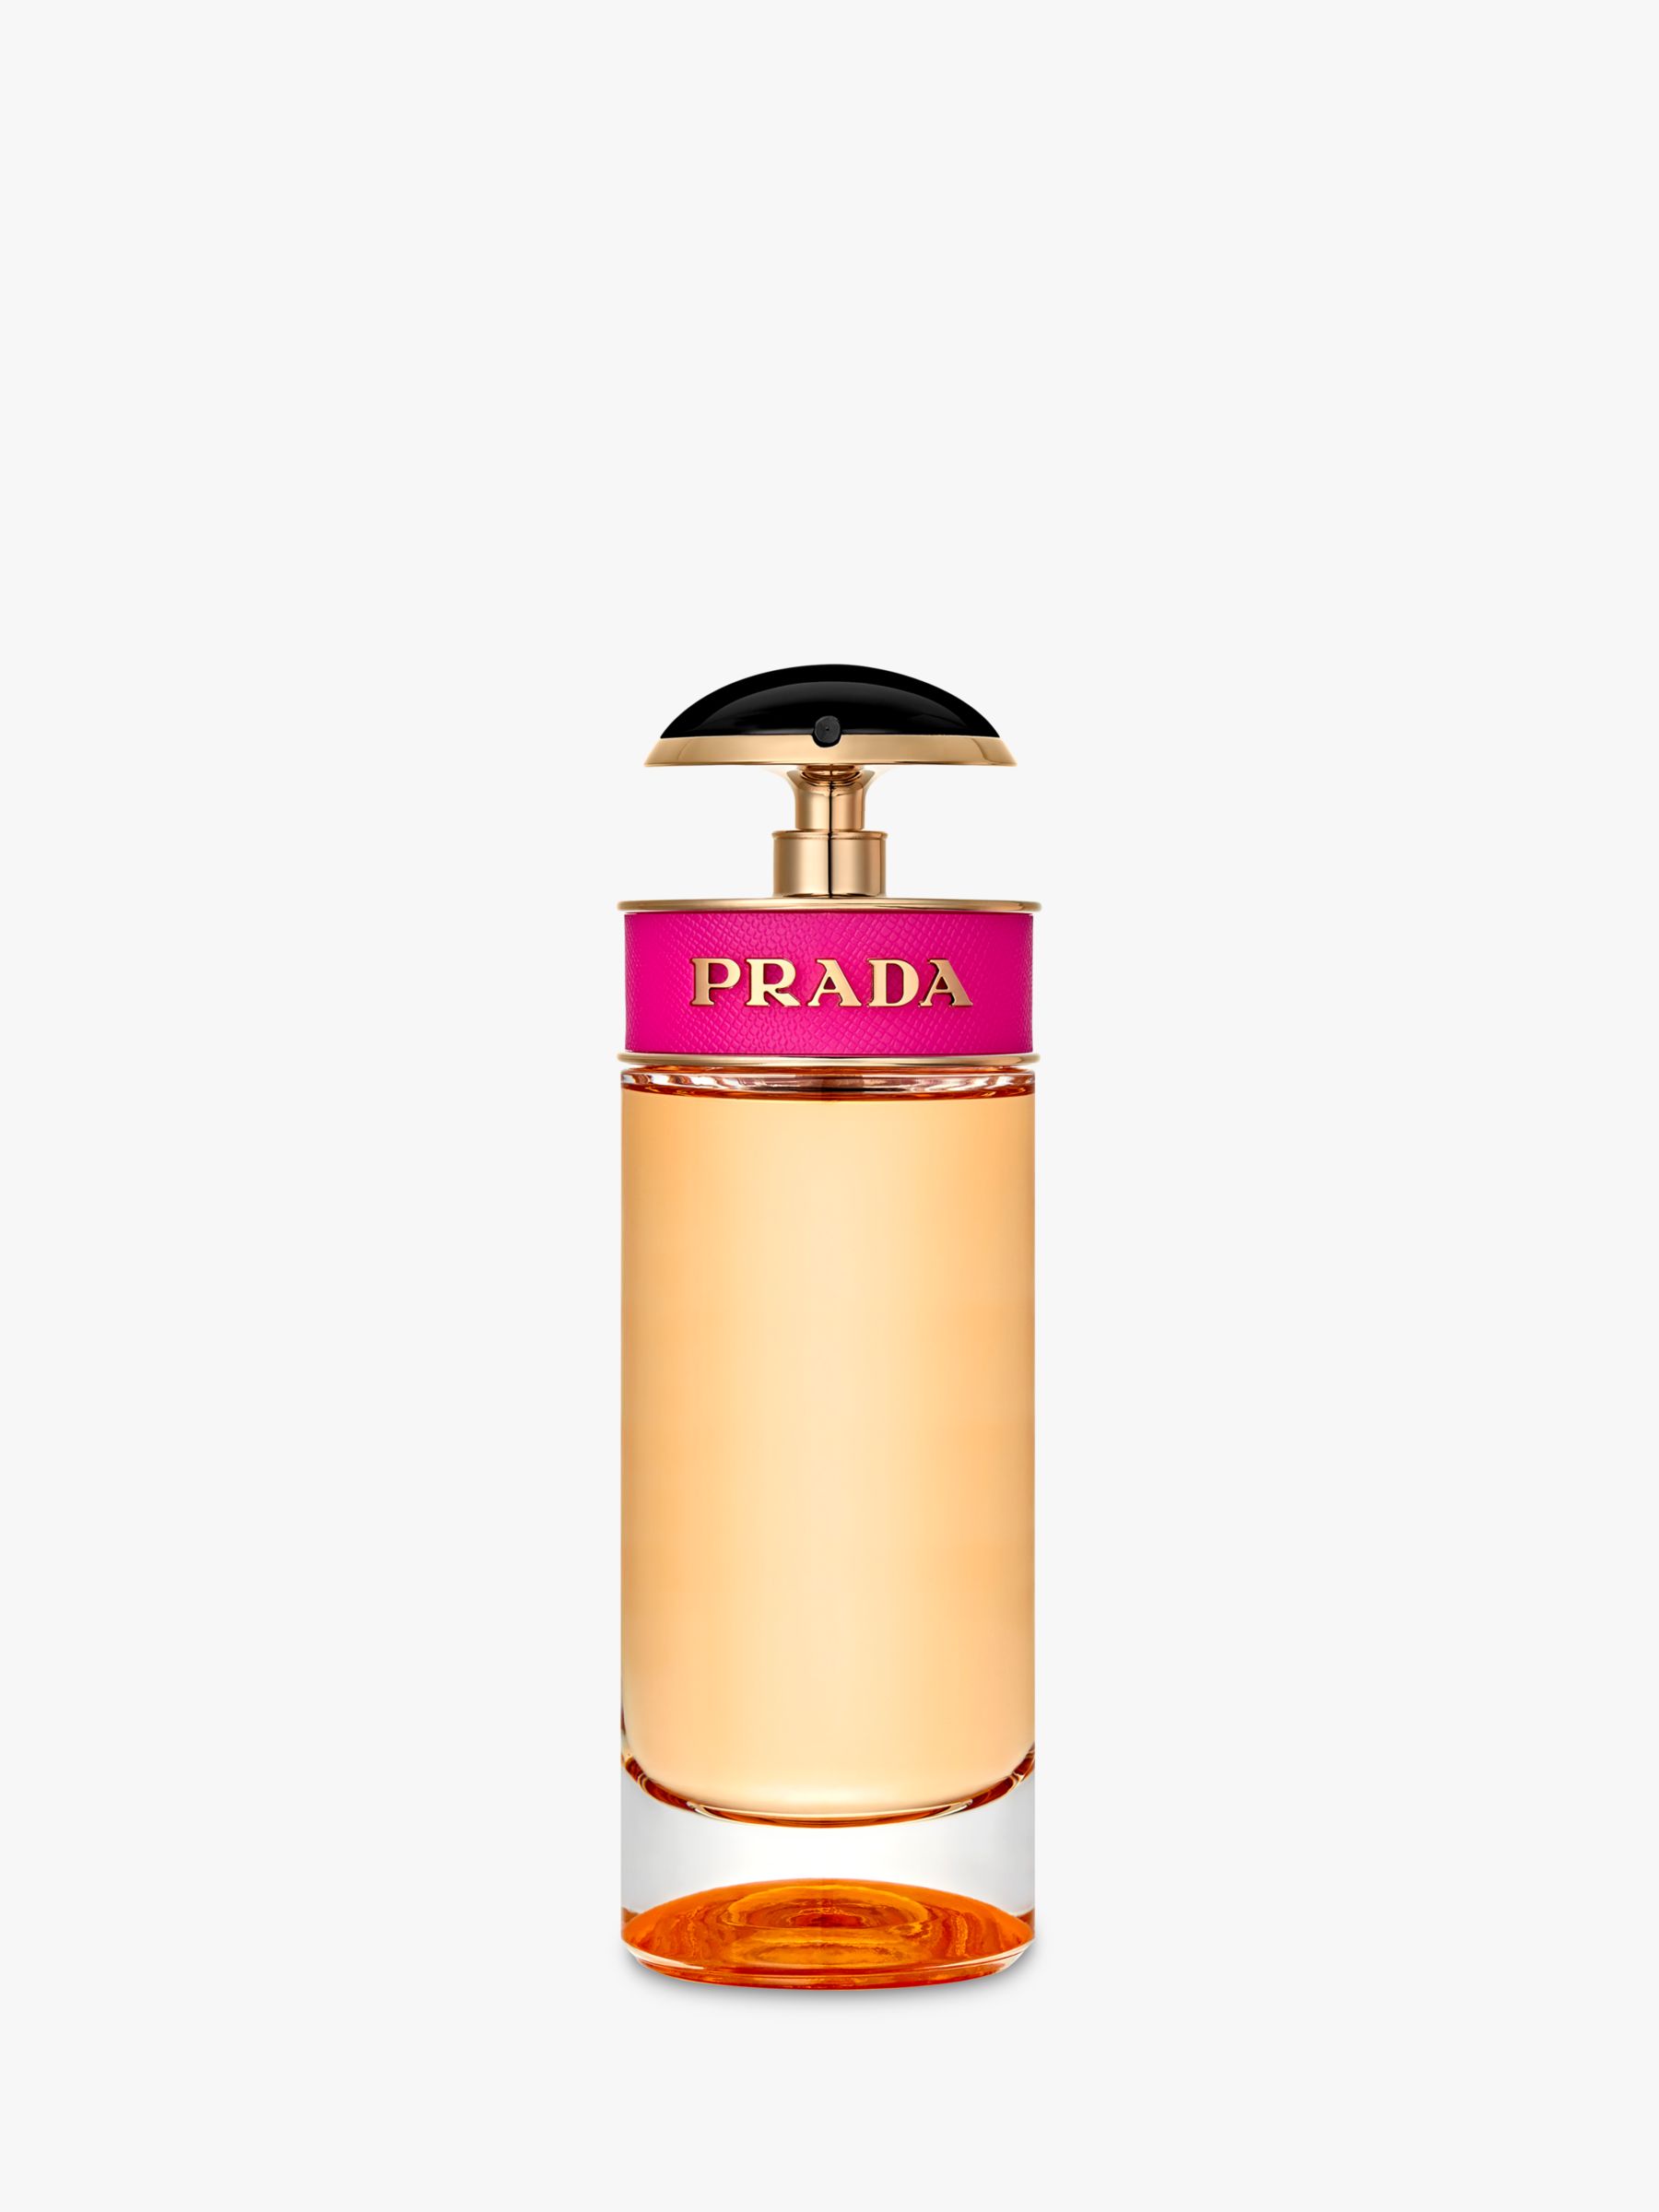 Prada Candy Eau De Parfum At John Lewis & Partners